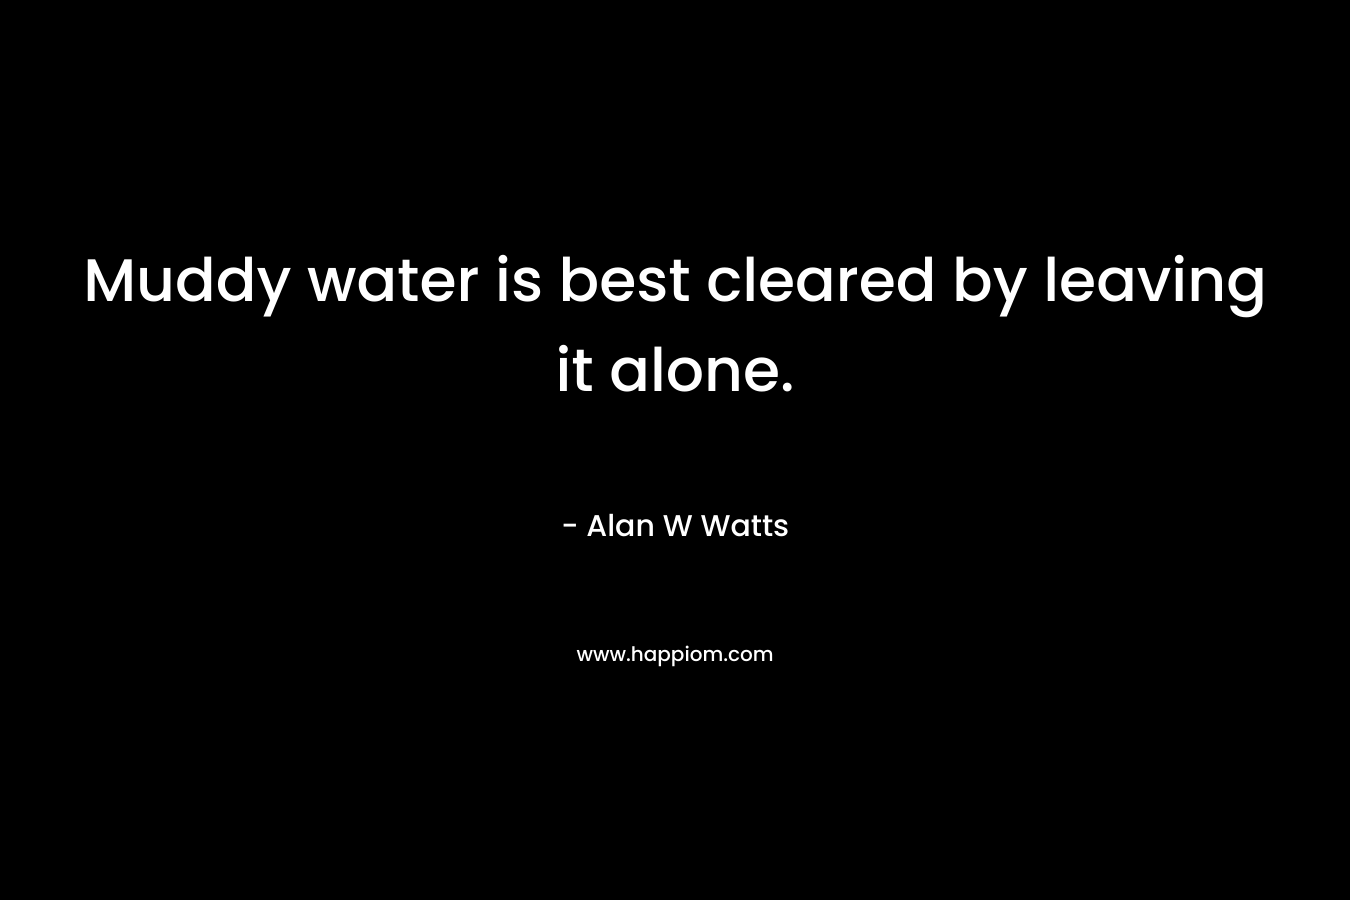 Muddy water is best cleared by leaving it alone. – Alan W Watts